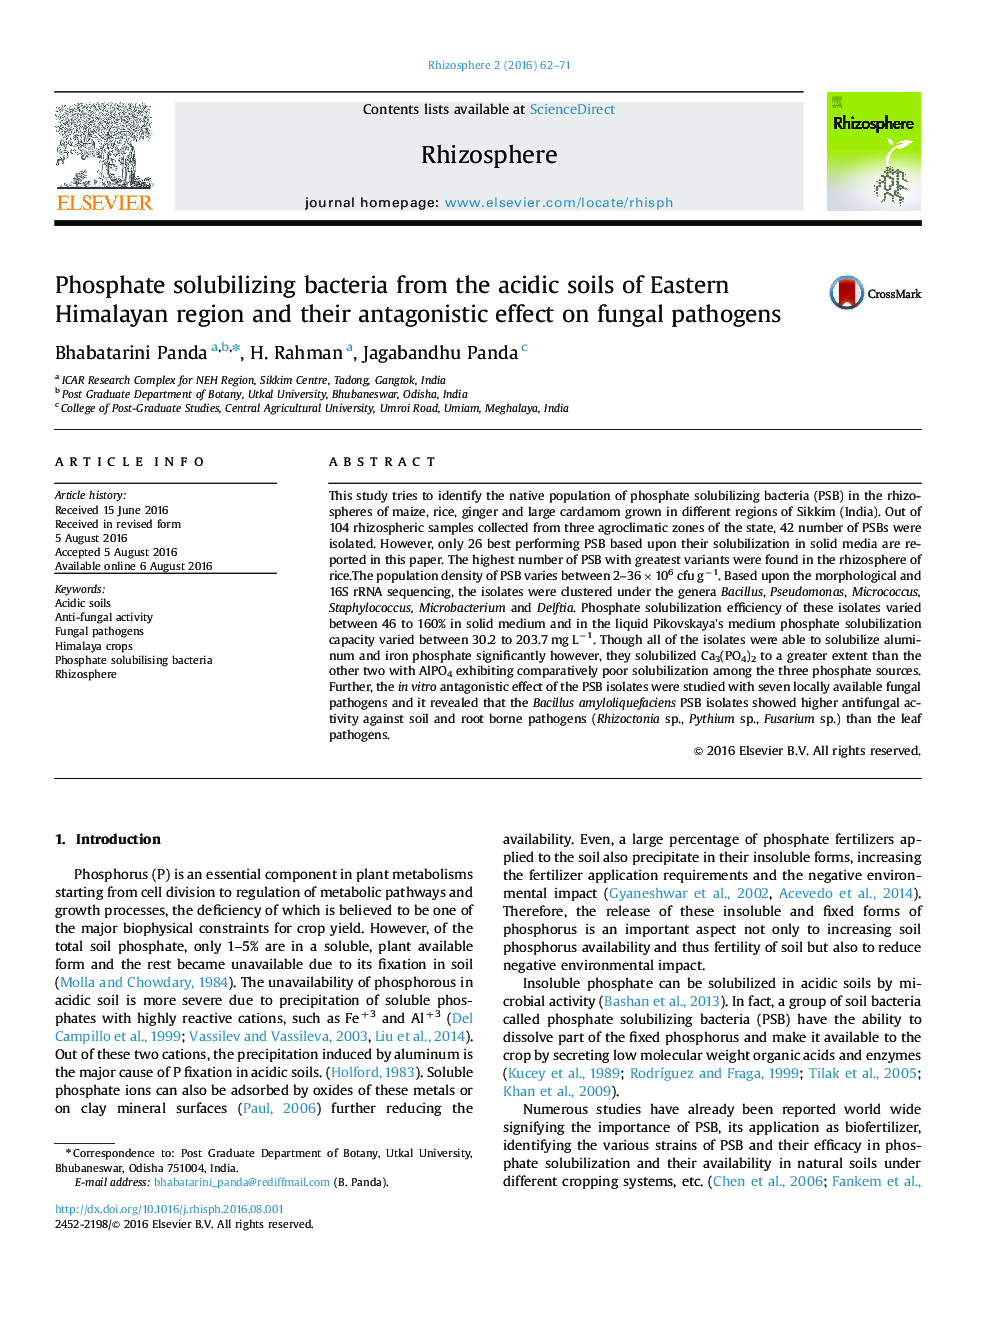 باکتری های حل کننده فسفات از خاک های اسیدی منطقه هیمالیا شرقی و تأثیر آنتاگونیستی آن بر پاتوژن های قارچی 